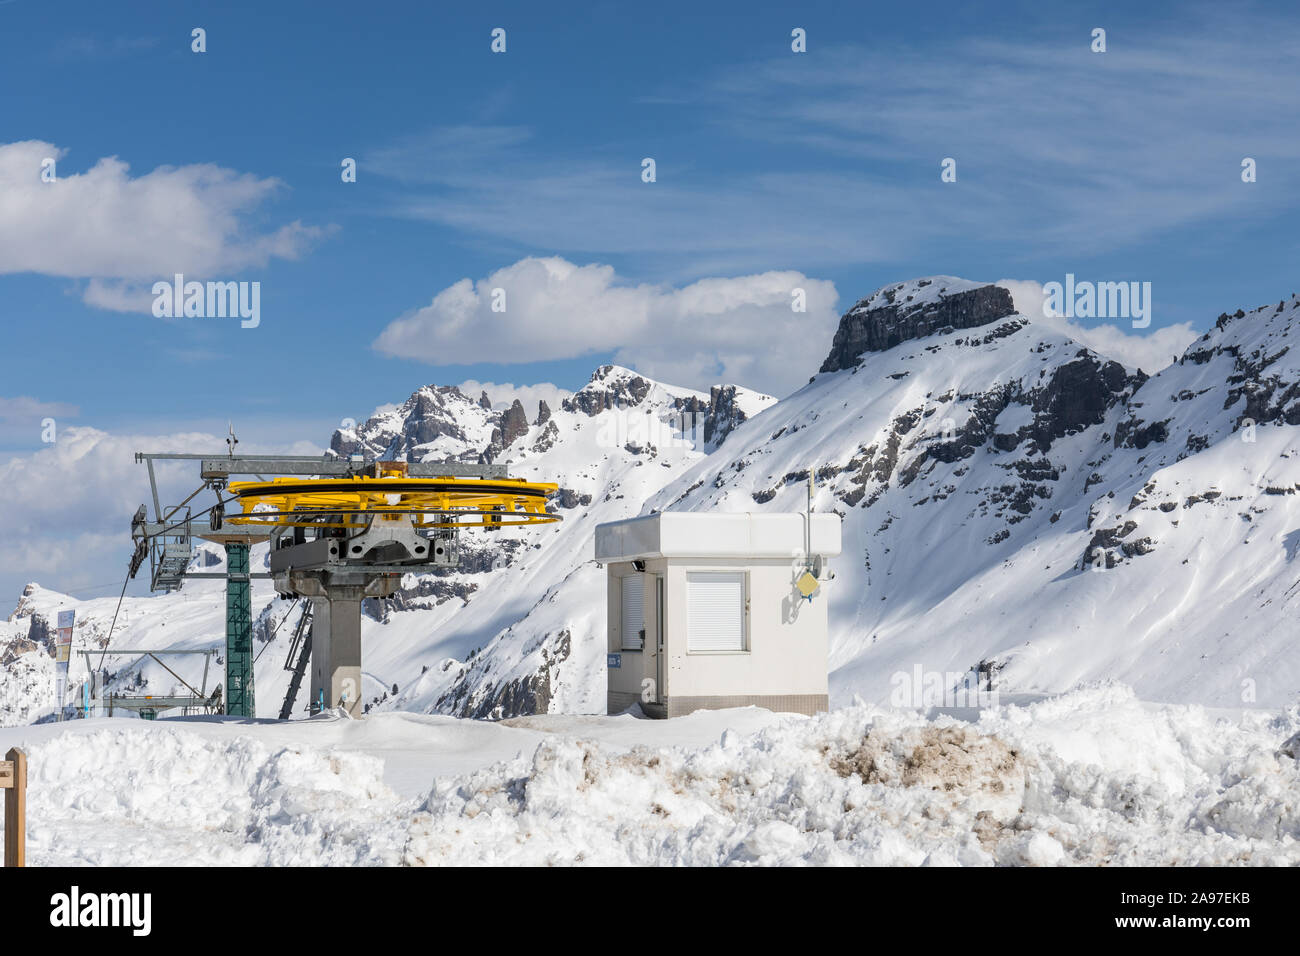 Stazione skilift immagini e fotografie stock ad alta risoluzione - Alamy